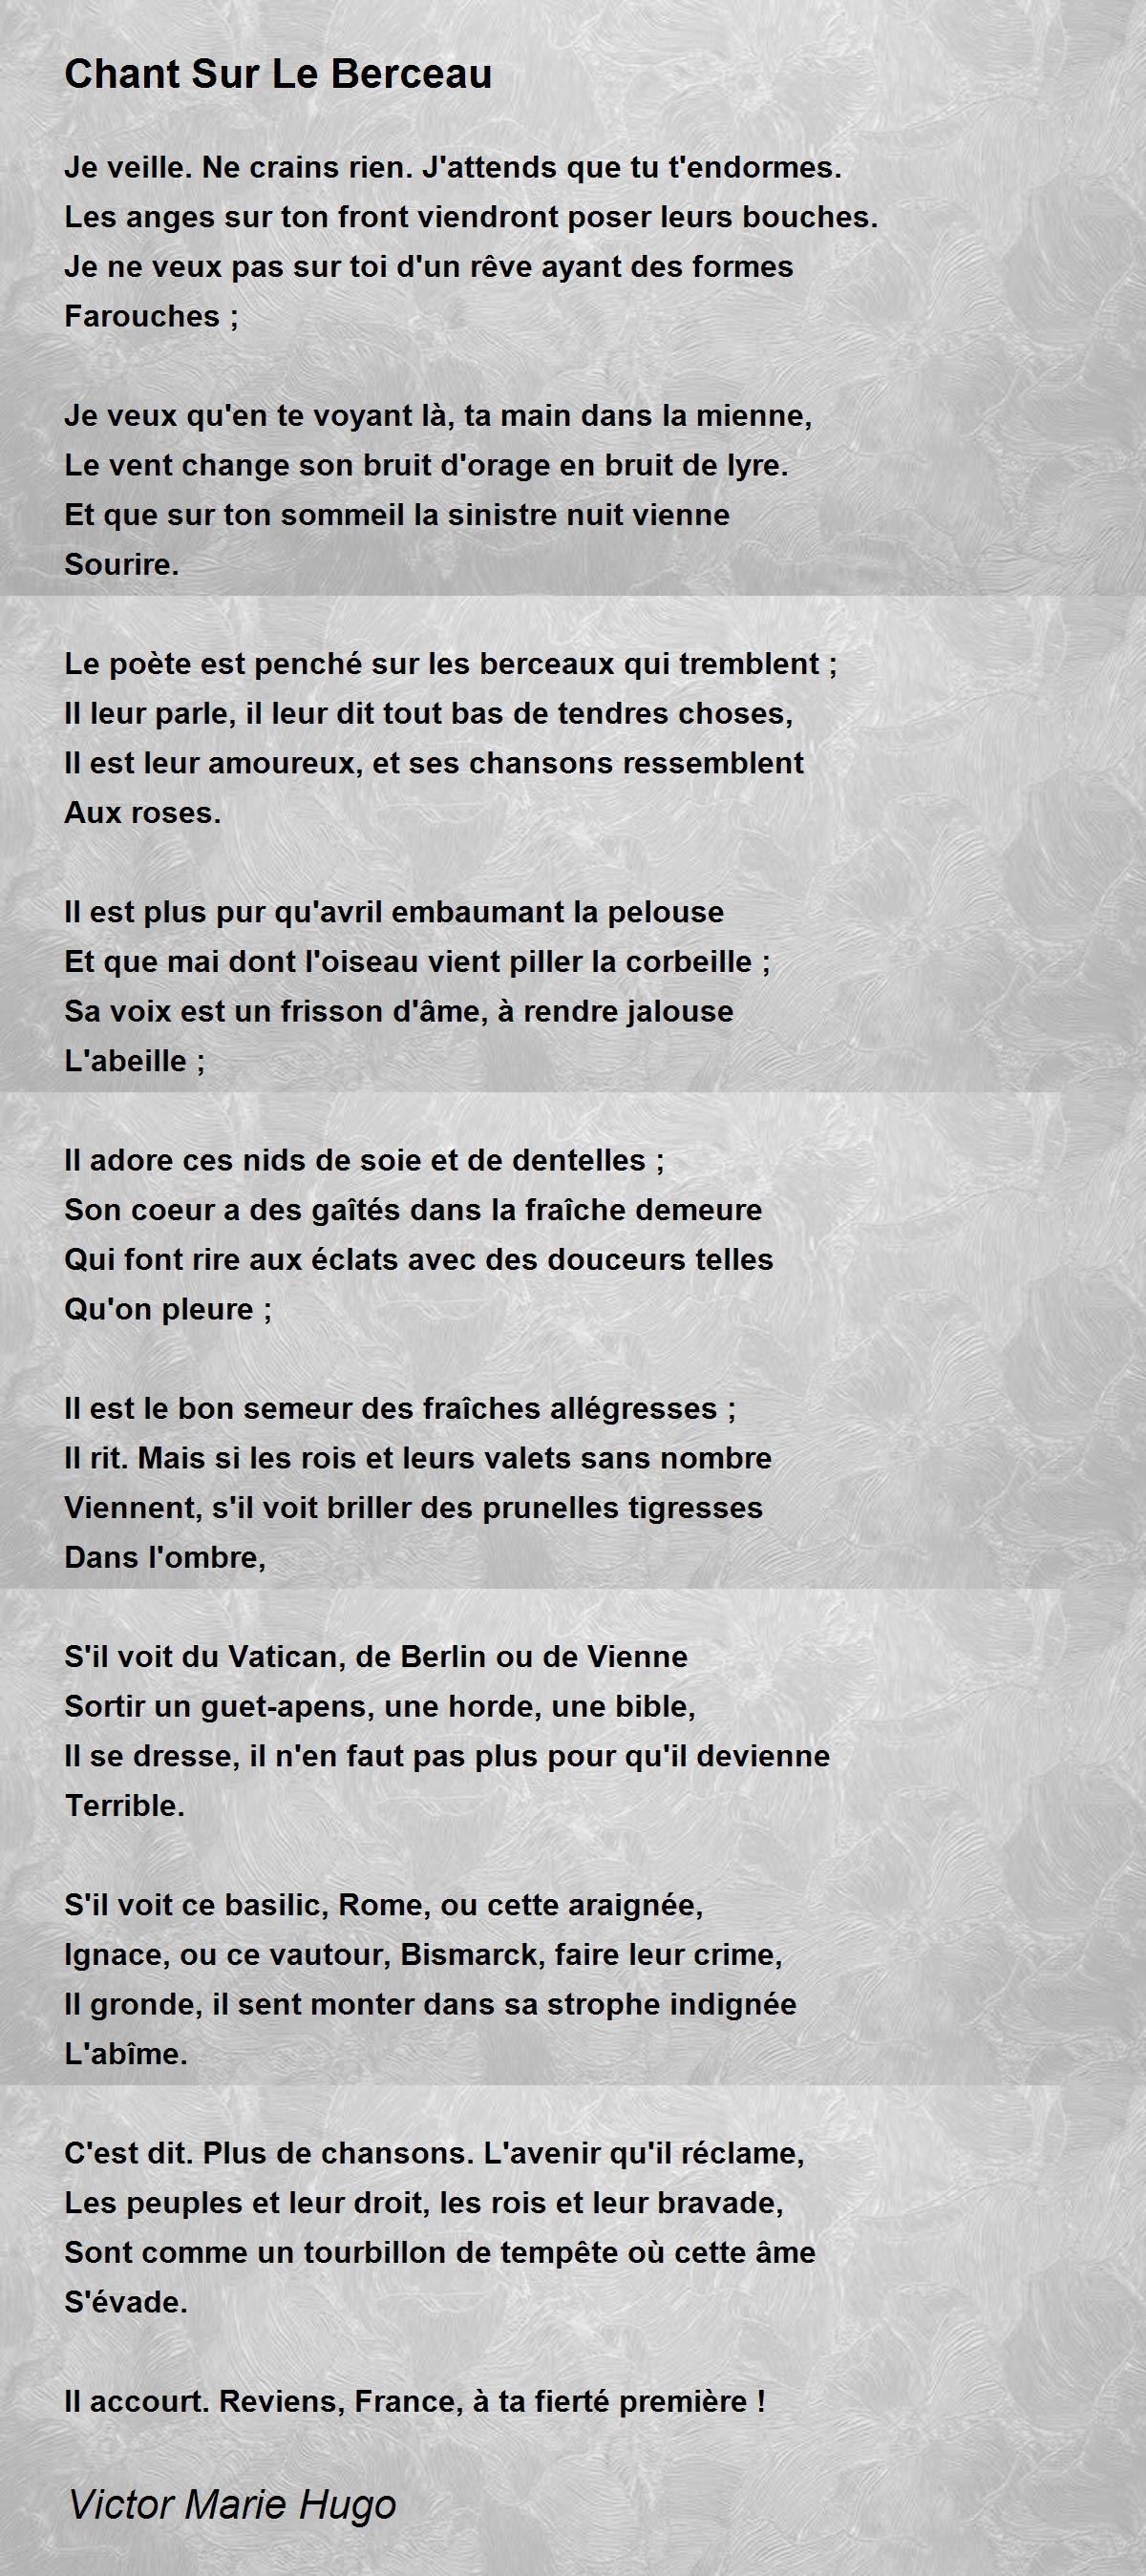 Chant Sur Le Berceau by Victor Marie Hugo - Chant Sur Le Berceau Poem